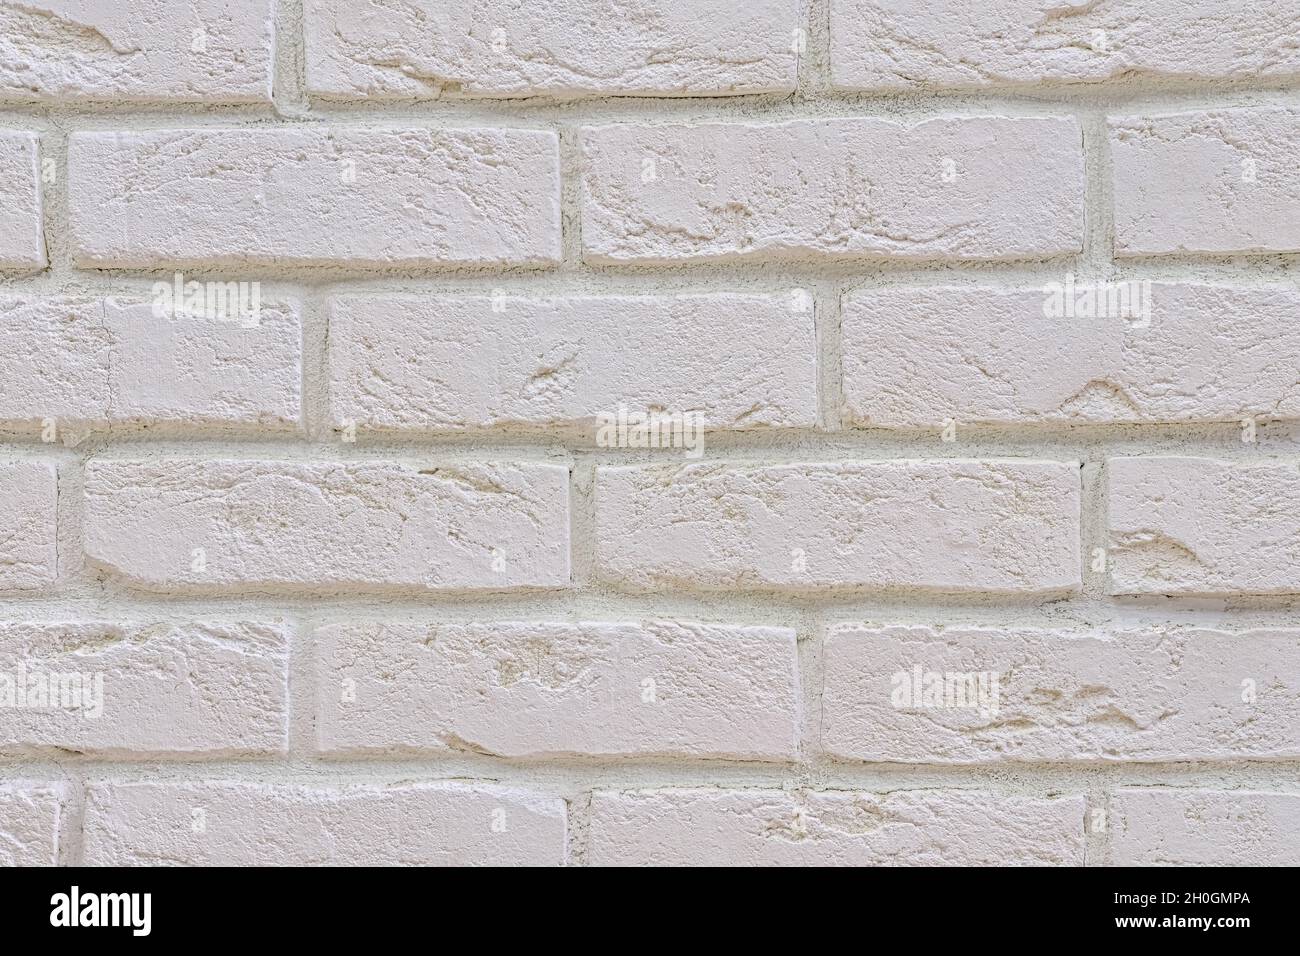 30 X 20 Cm 55872 Modélisme Mur De Brique N Noch Matériaux De Surface